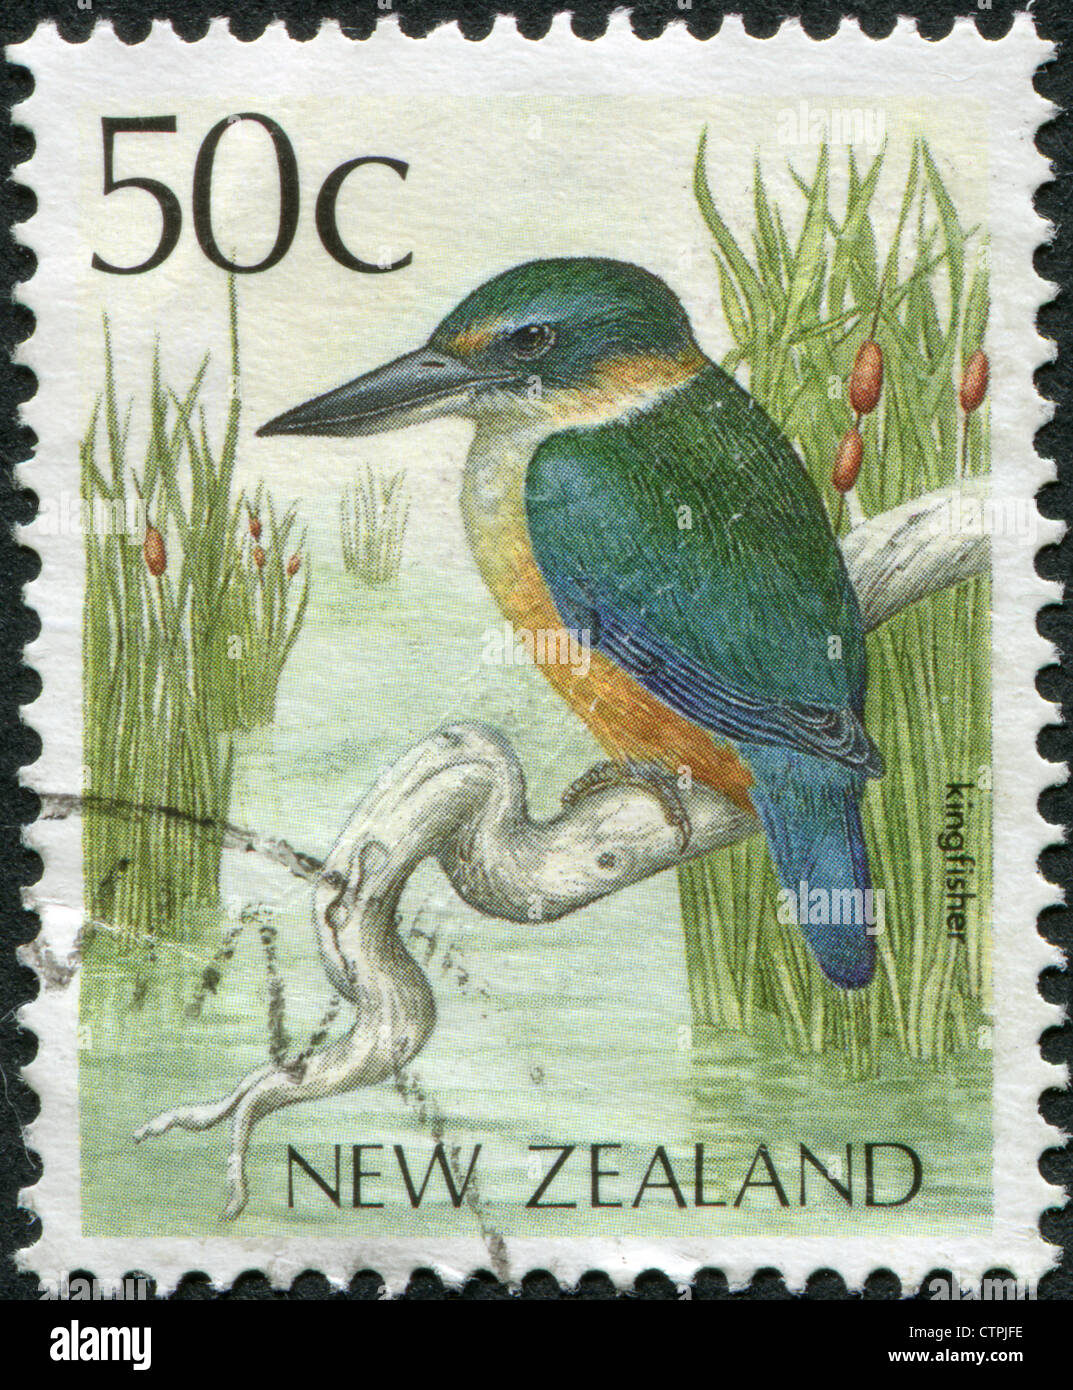 Nuova Zelanda - circa 1988: francobolli stampati in Nuova Zelanda, mostra un uccello Kingfisher, circa 1988 Foto Stock